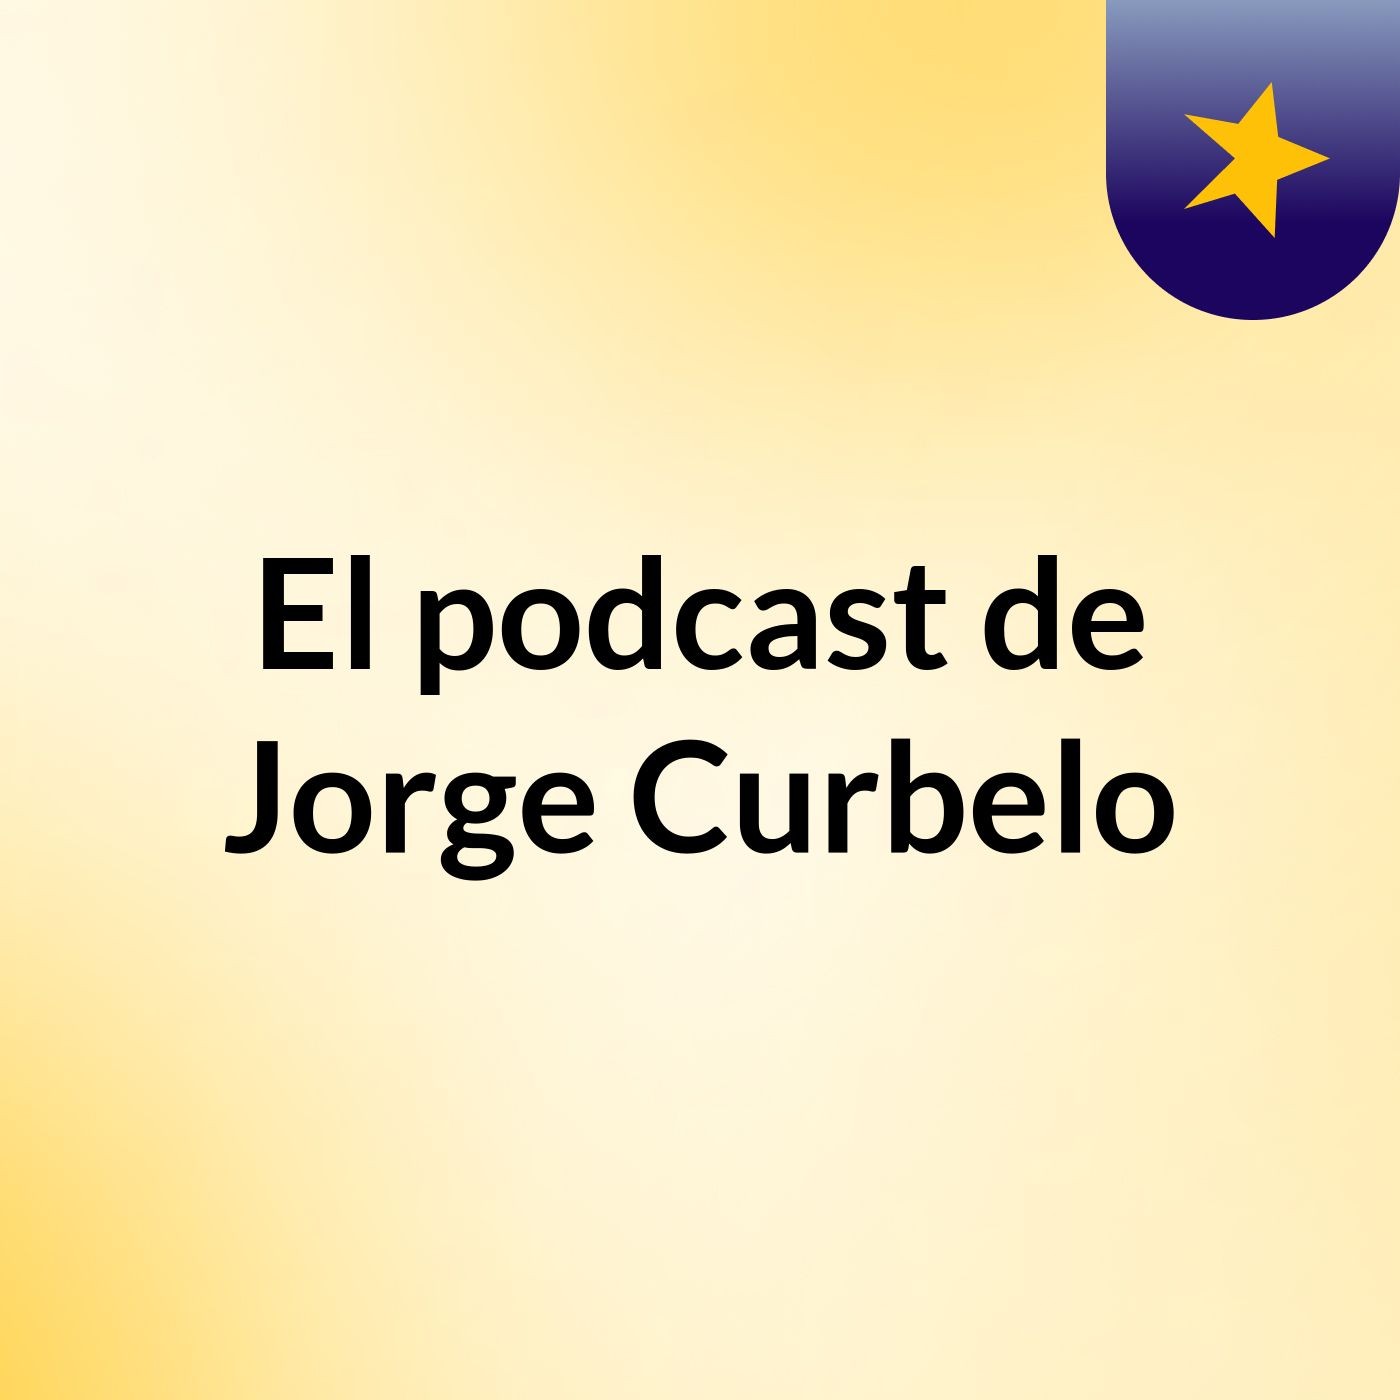 El podcast de Jorge Curbelo